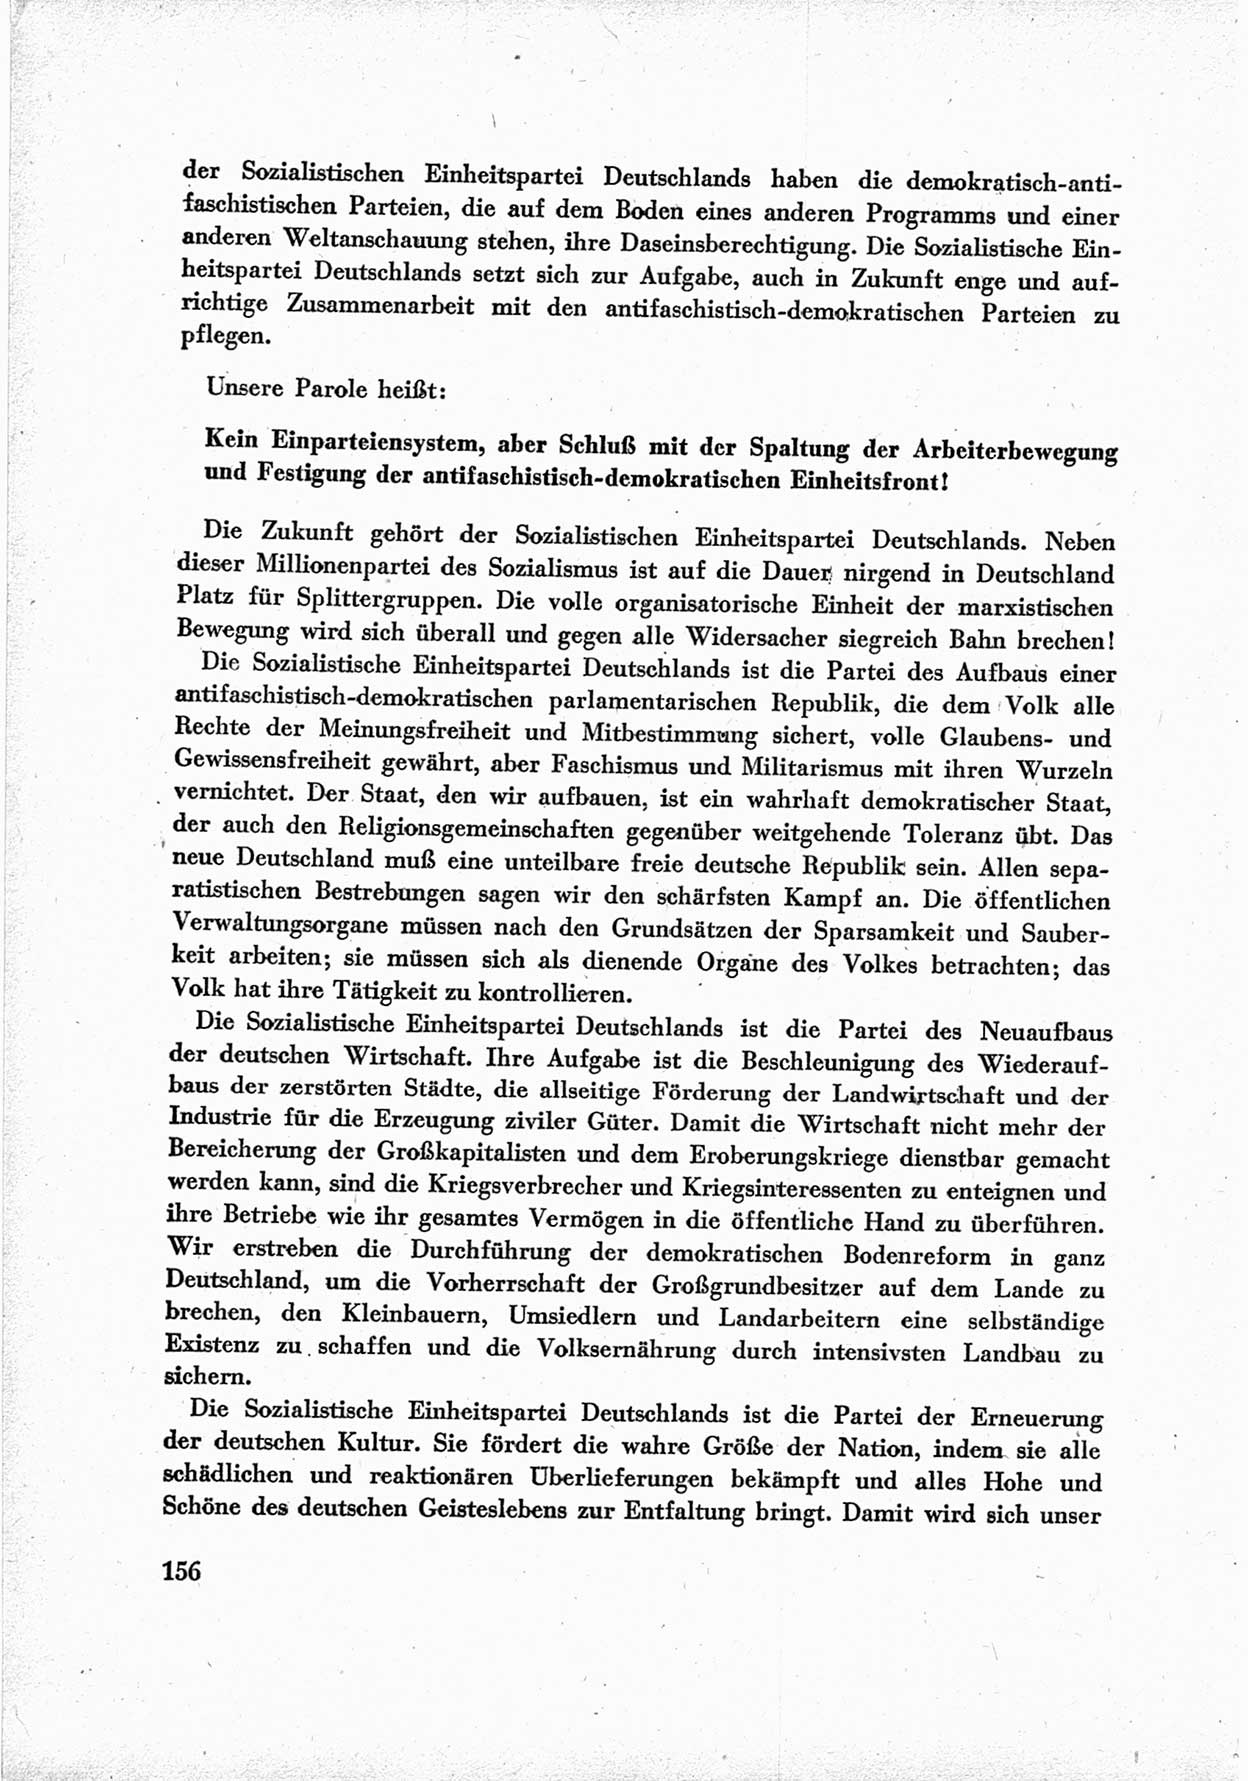 40. Parteitag der Sozialdemokratischen Partei Deutschlands (SPD) [Sowjetische Besatzungszone (SBZ) Deutschlands] am 19. und 20. April 1946 in Berlin, Seite 156 (40. PT SPD SBZ Dtl. 1946, S. 156)